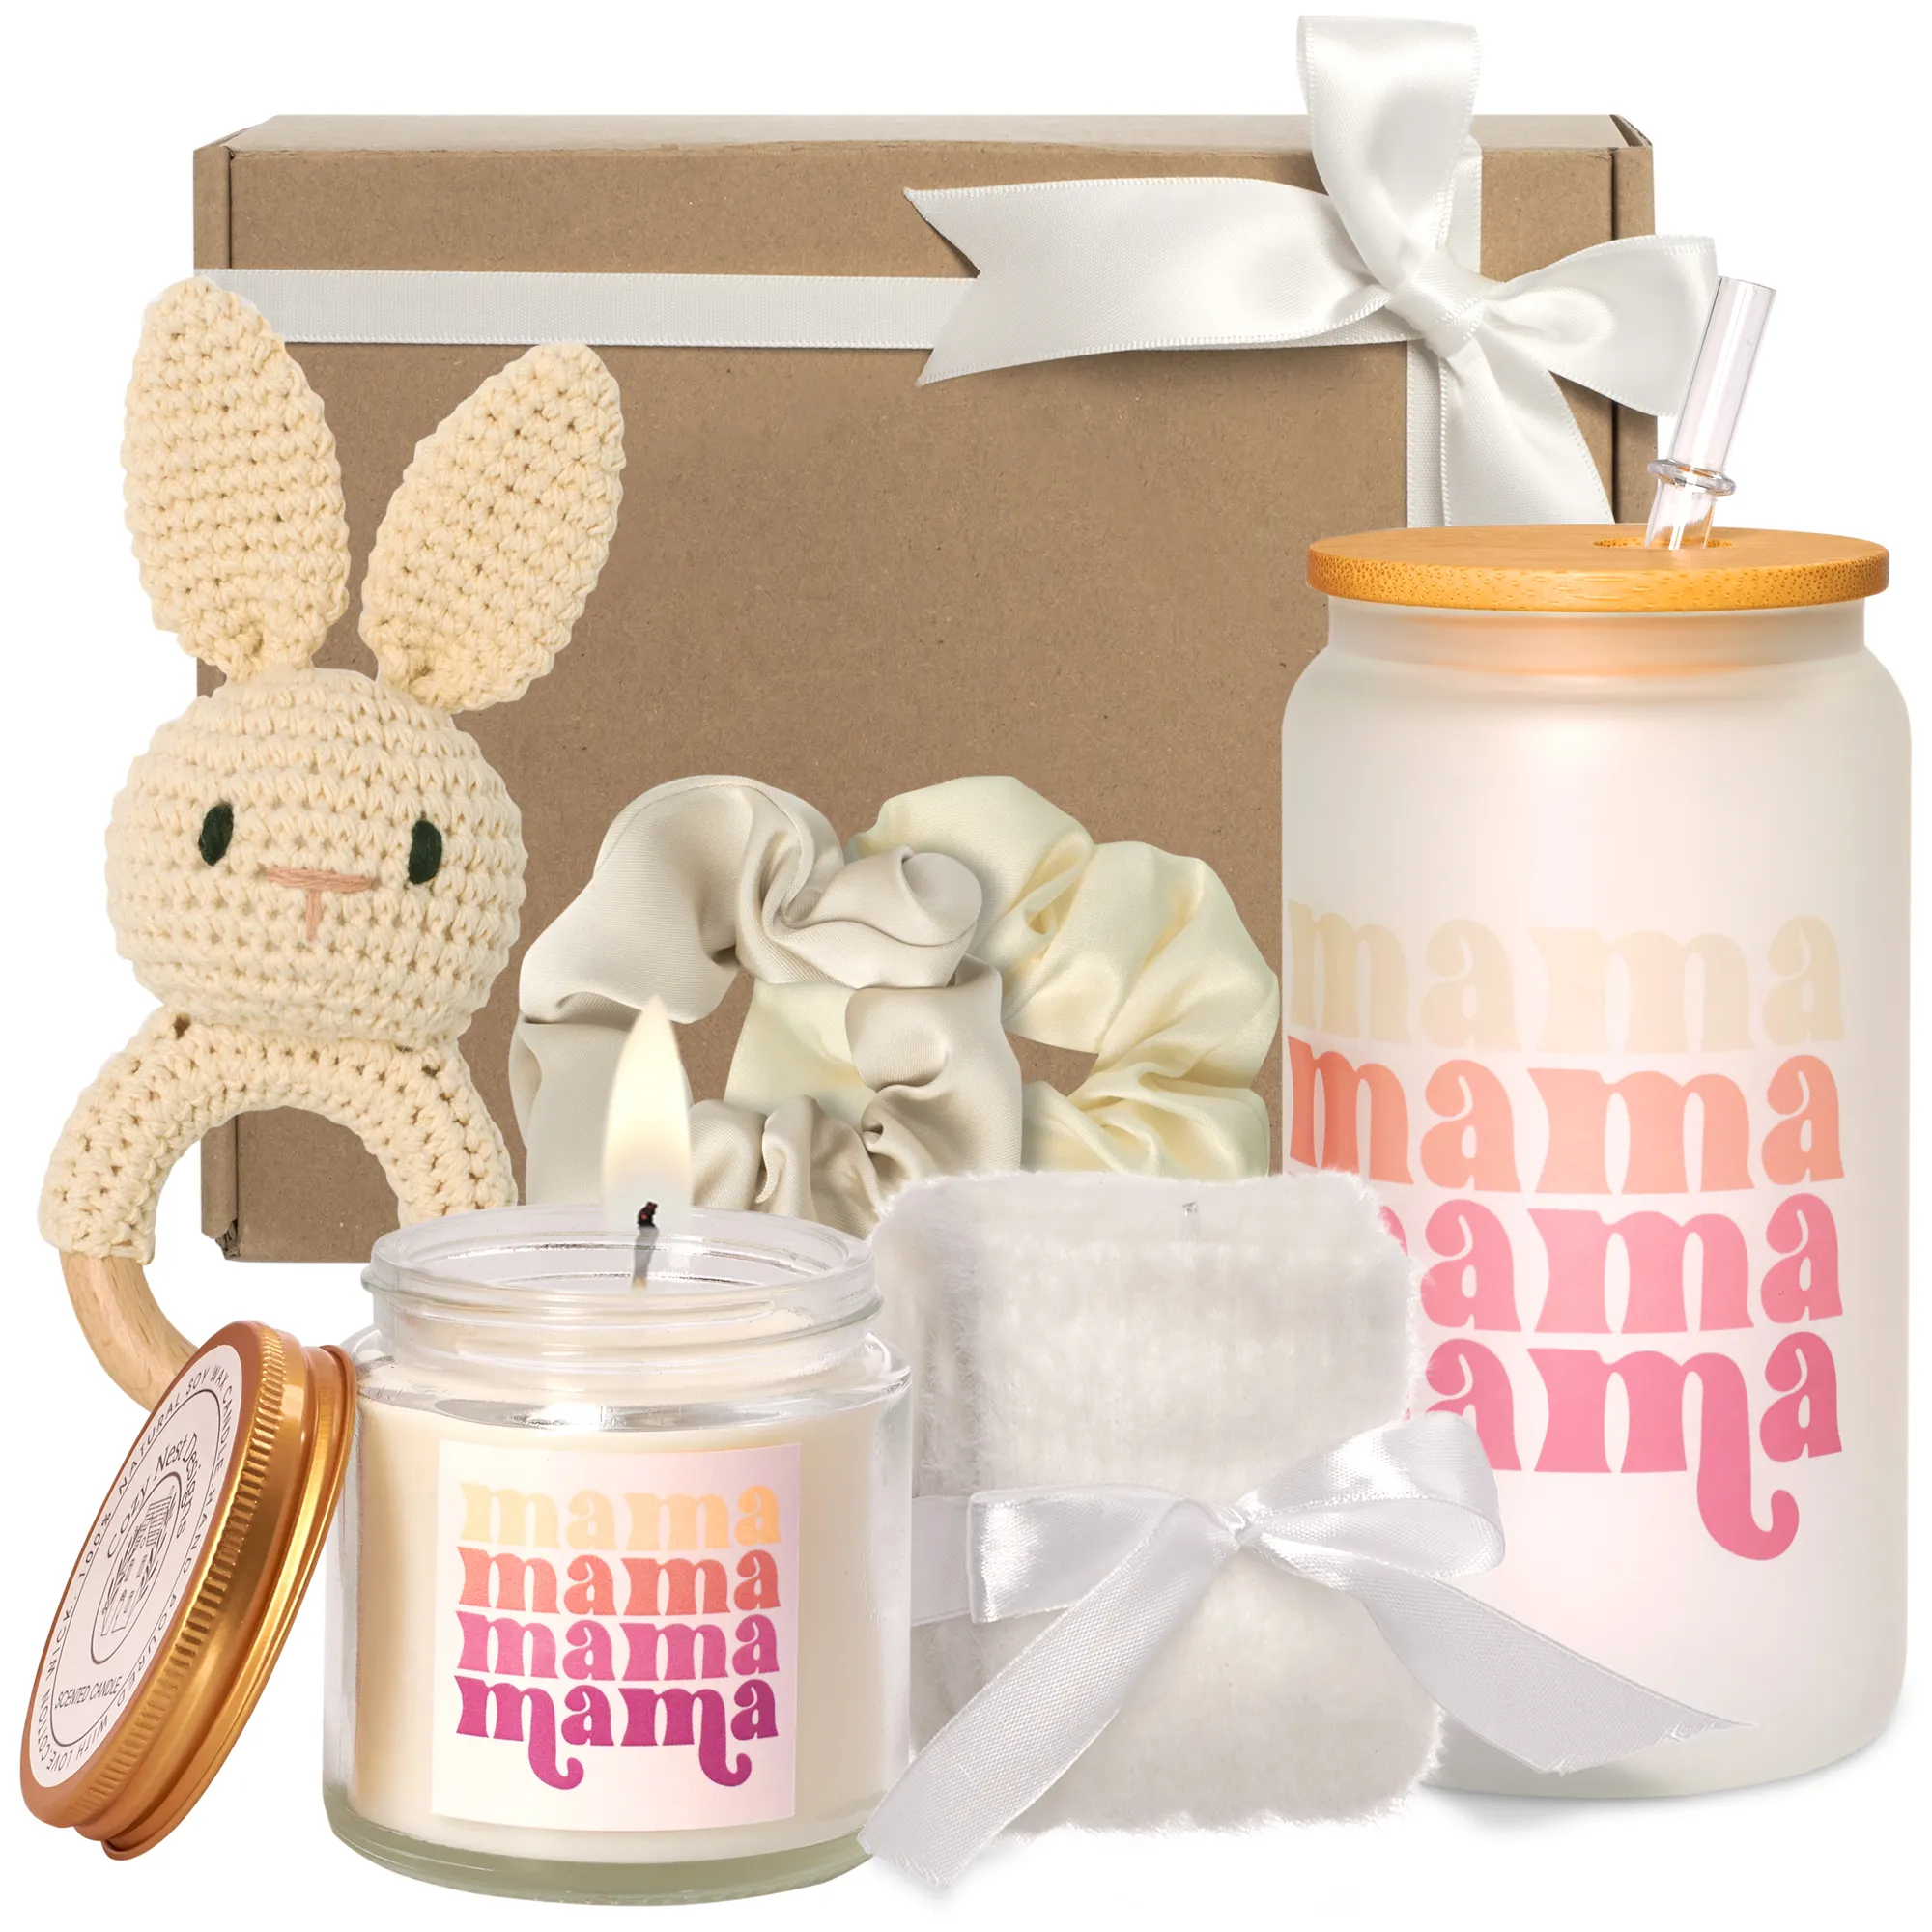 Juego de regalos personalizados para el día de la madre con taza de cristal, calcetines, velas, etiquetas privadas, caja de regalo para mamá